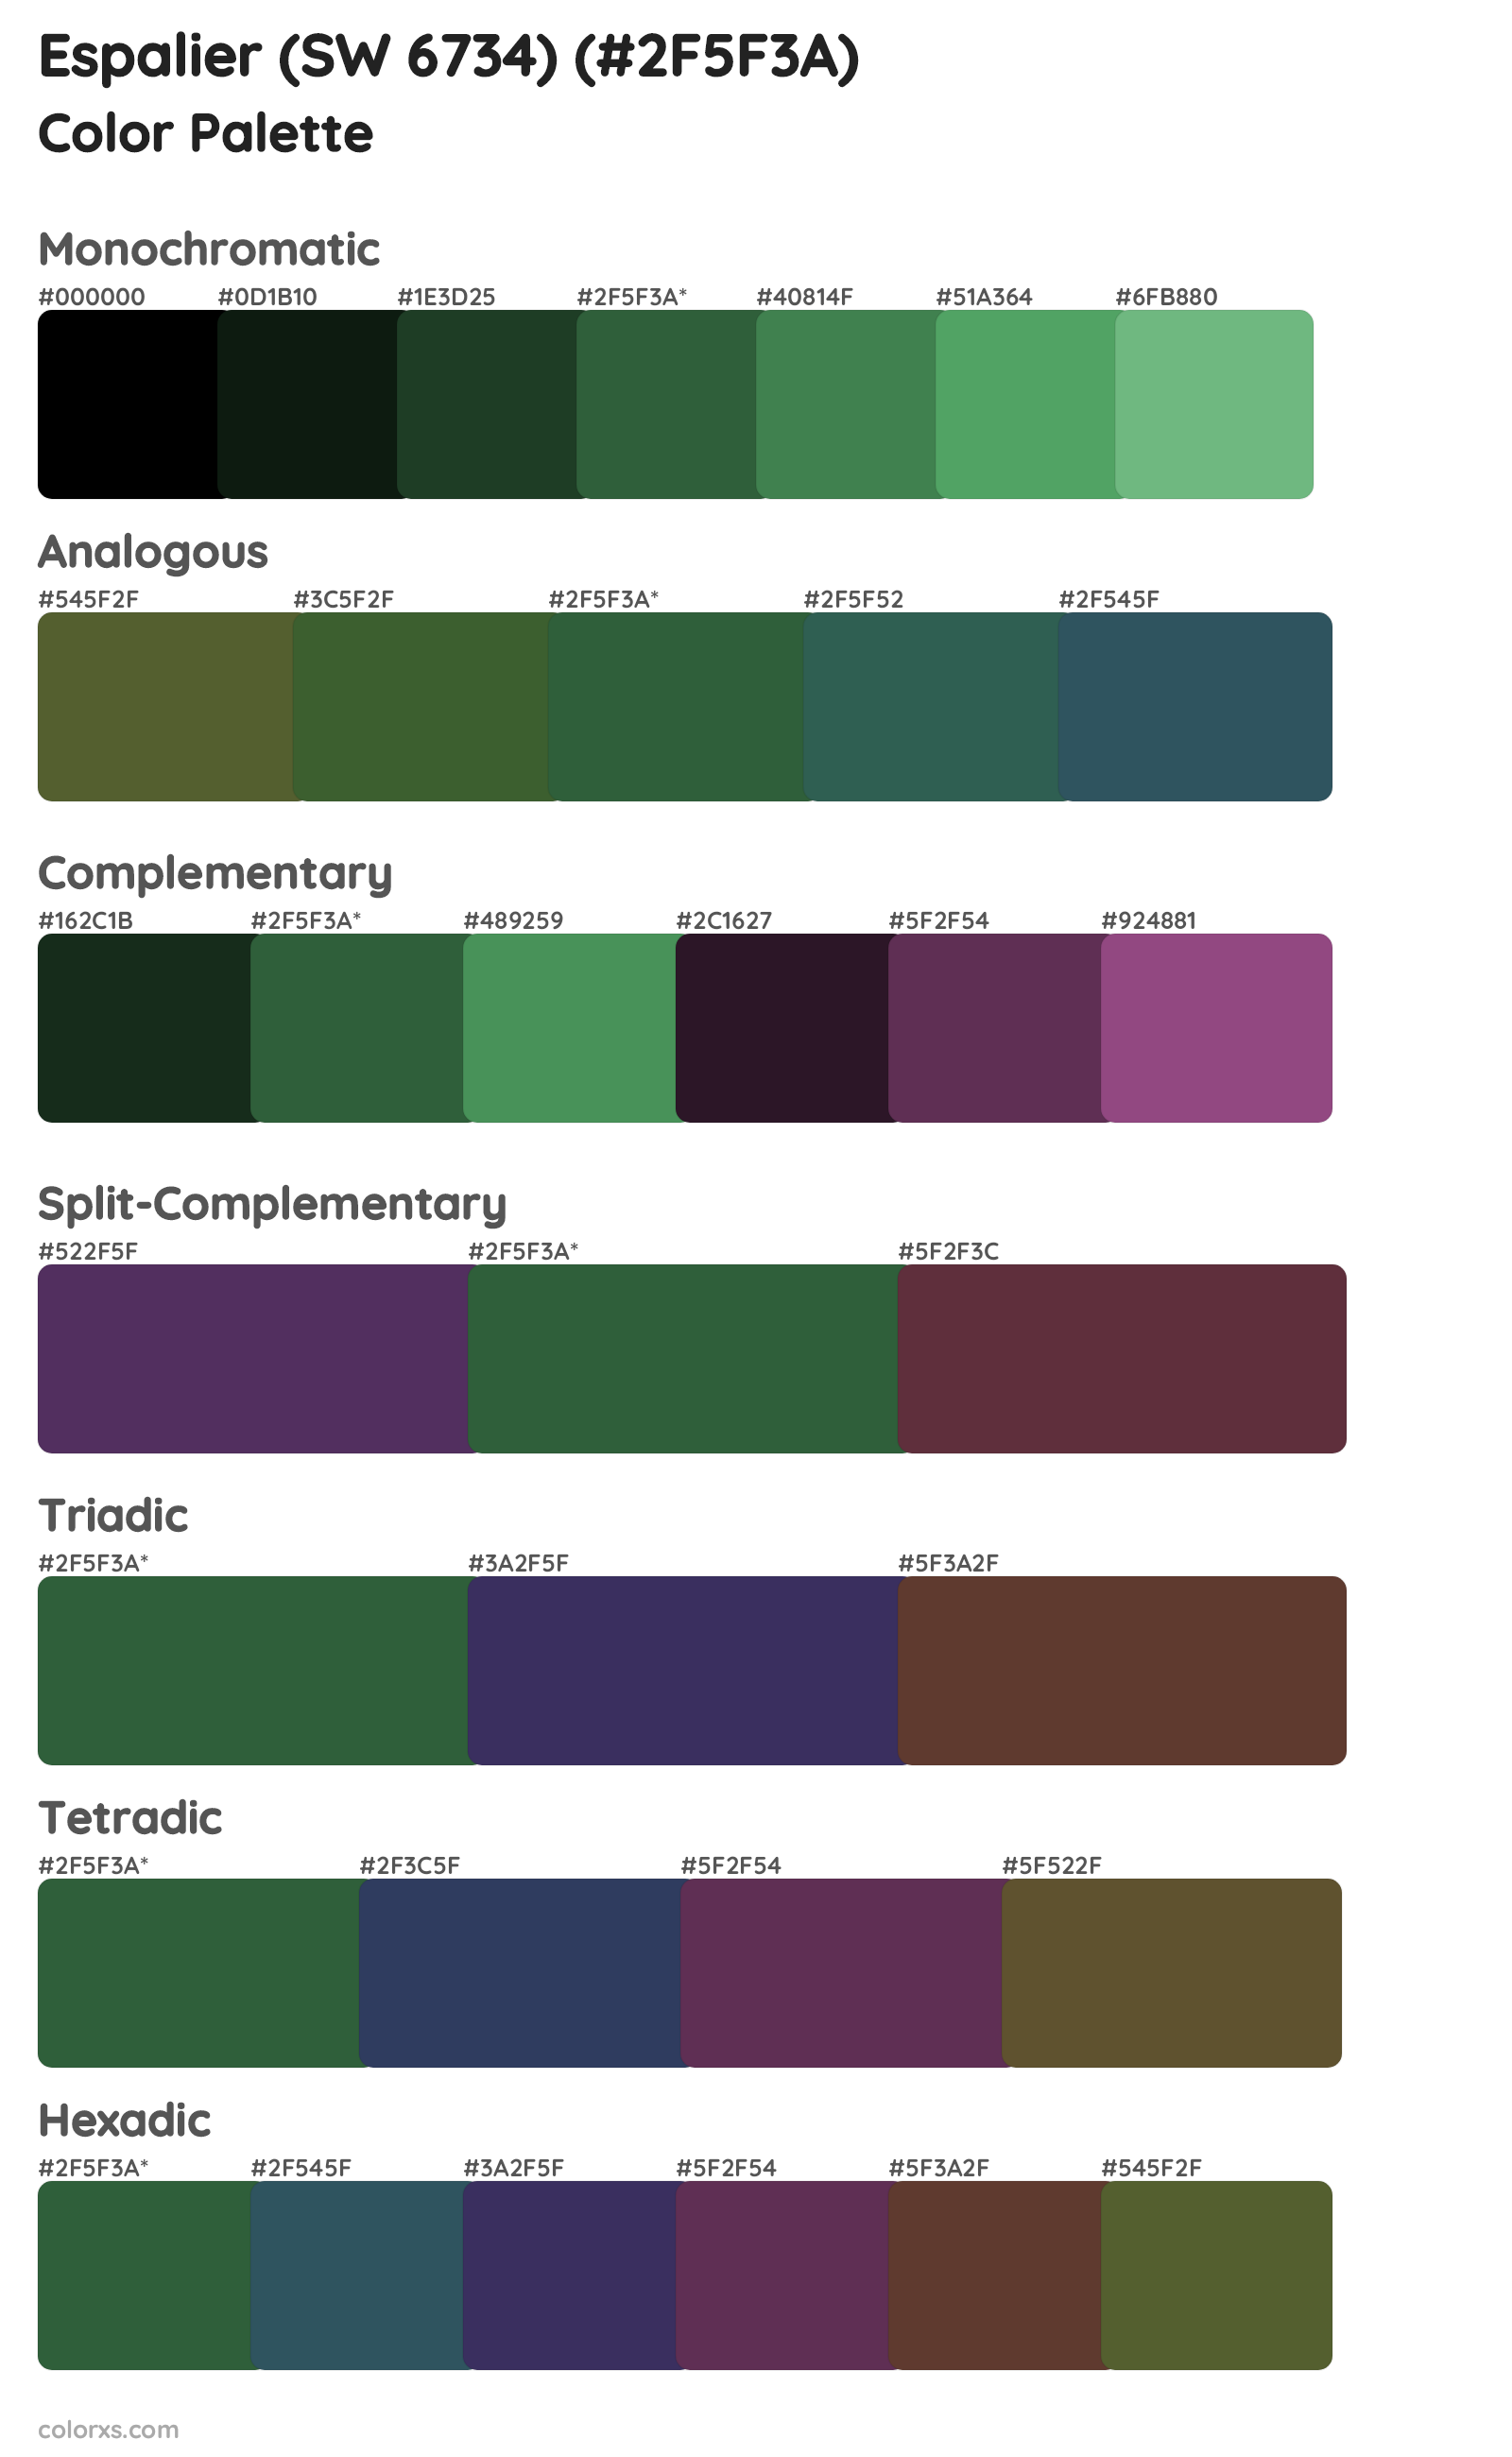 Espalier (SW 6734) Color Scheme Palettes